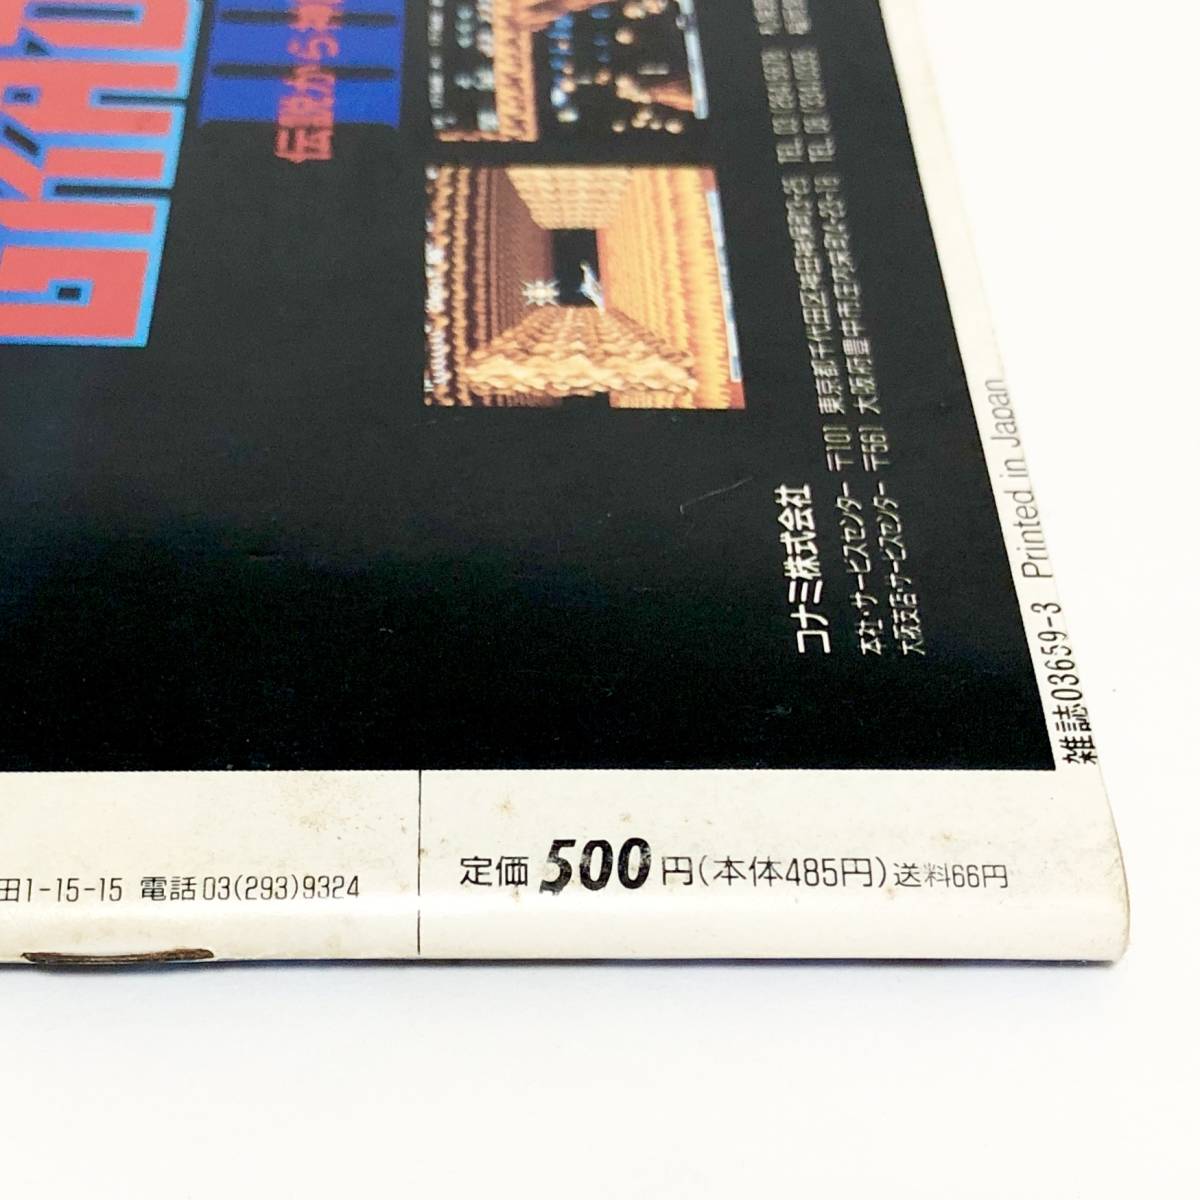 月刊ゲーメスト No.42 1990年 3月号 痛みあり アーケード ゲーム雑誌 グラディウスⅢ 他 Gamest Japanese Video Game Magazine Gradius Ⅲ _画像8